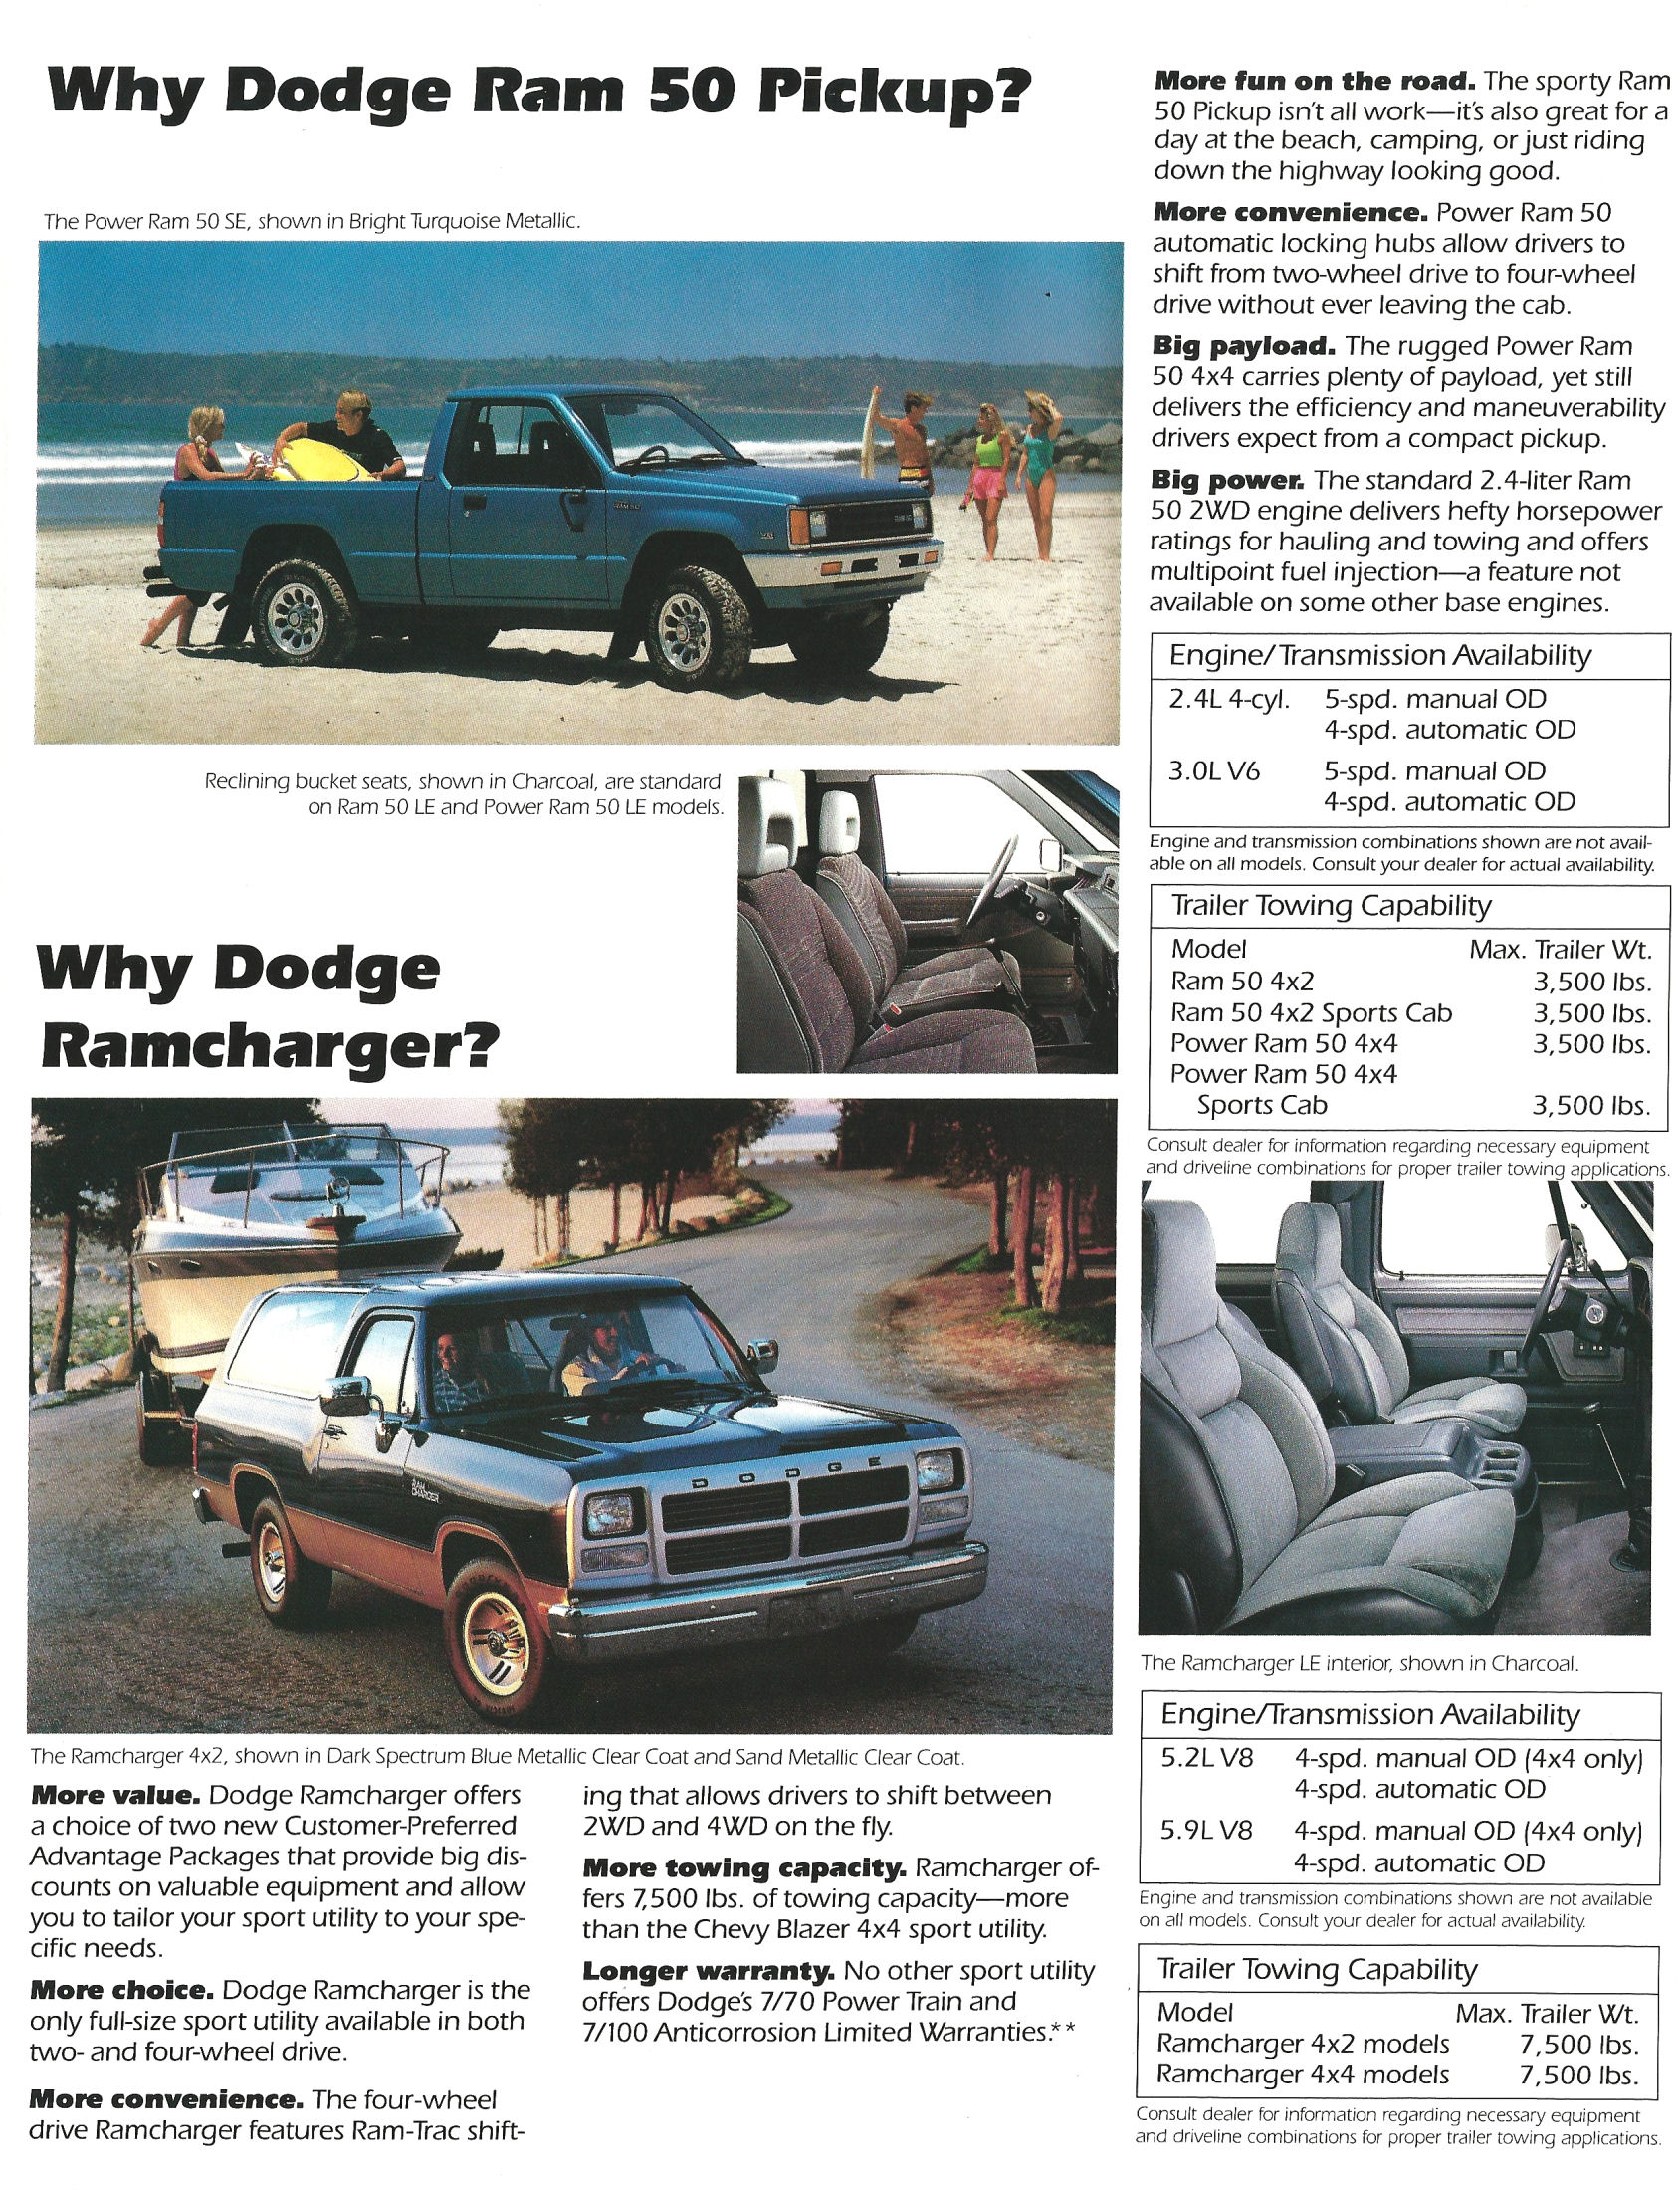 1991_Dodge_Truck_Foldout-06